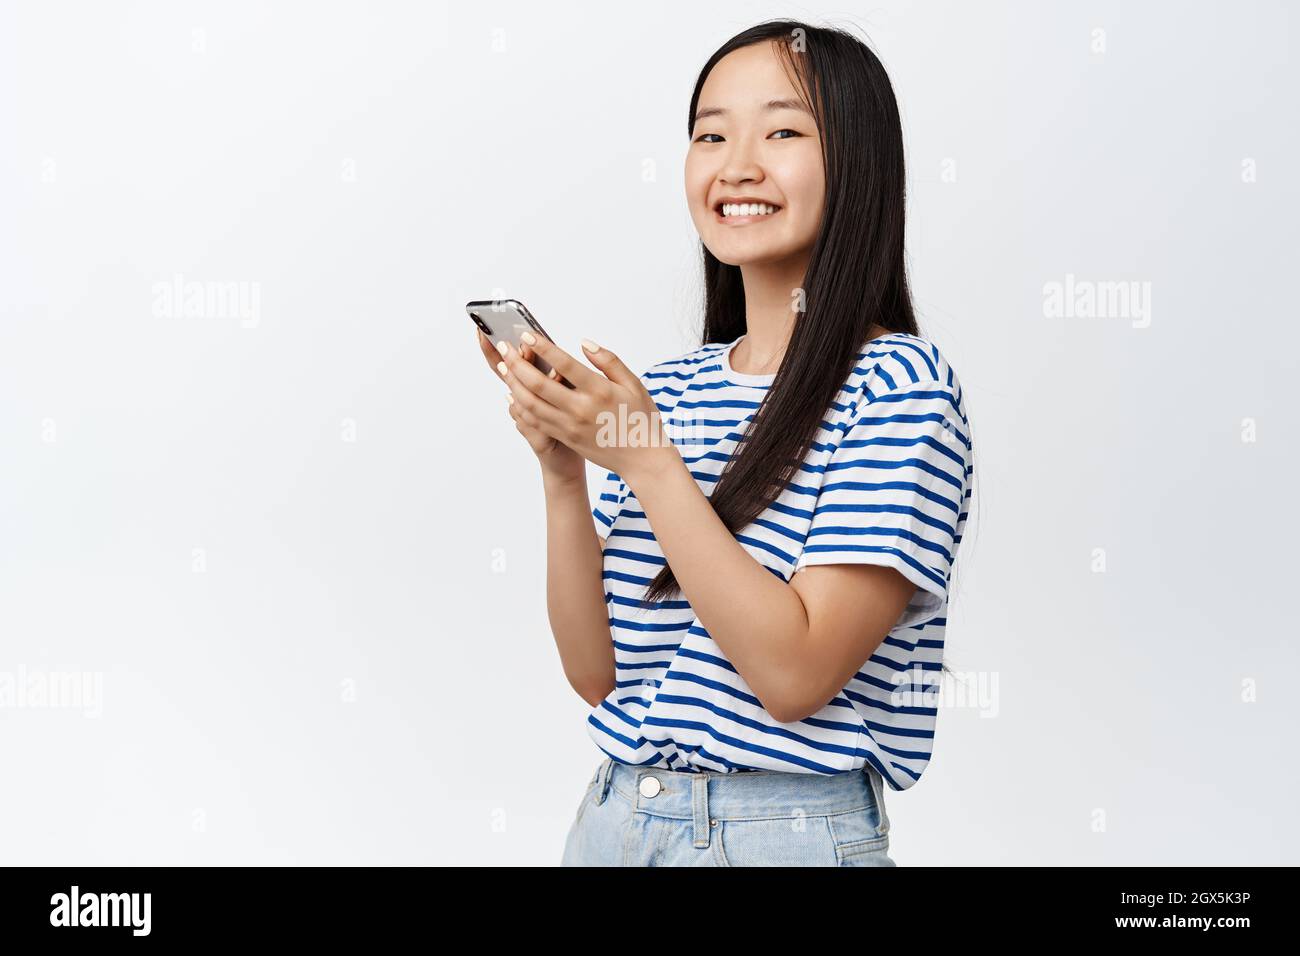 Ritratto di ragazza asiatica con smartphone e sorridente alla fotocamera, concetto di tecnologia cellulare e applicazioni mobili, sfondo bianco Foto Stock